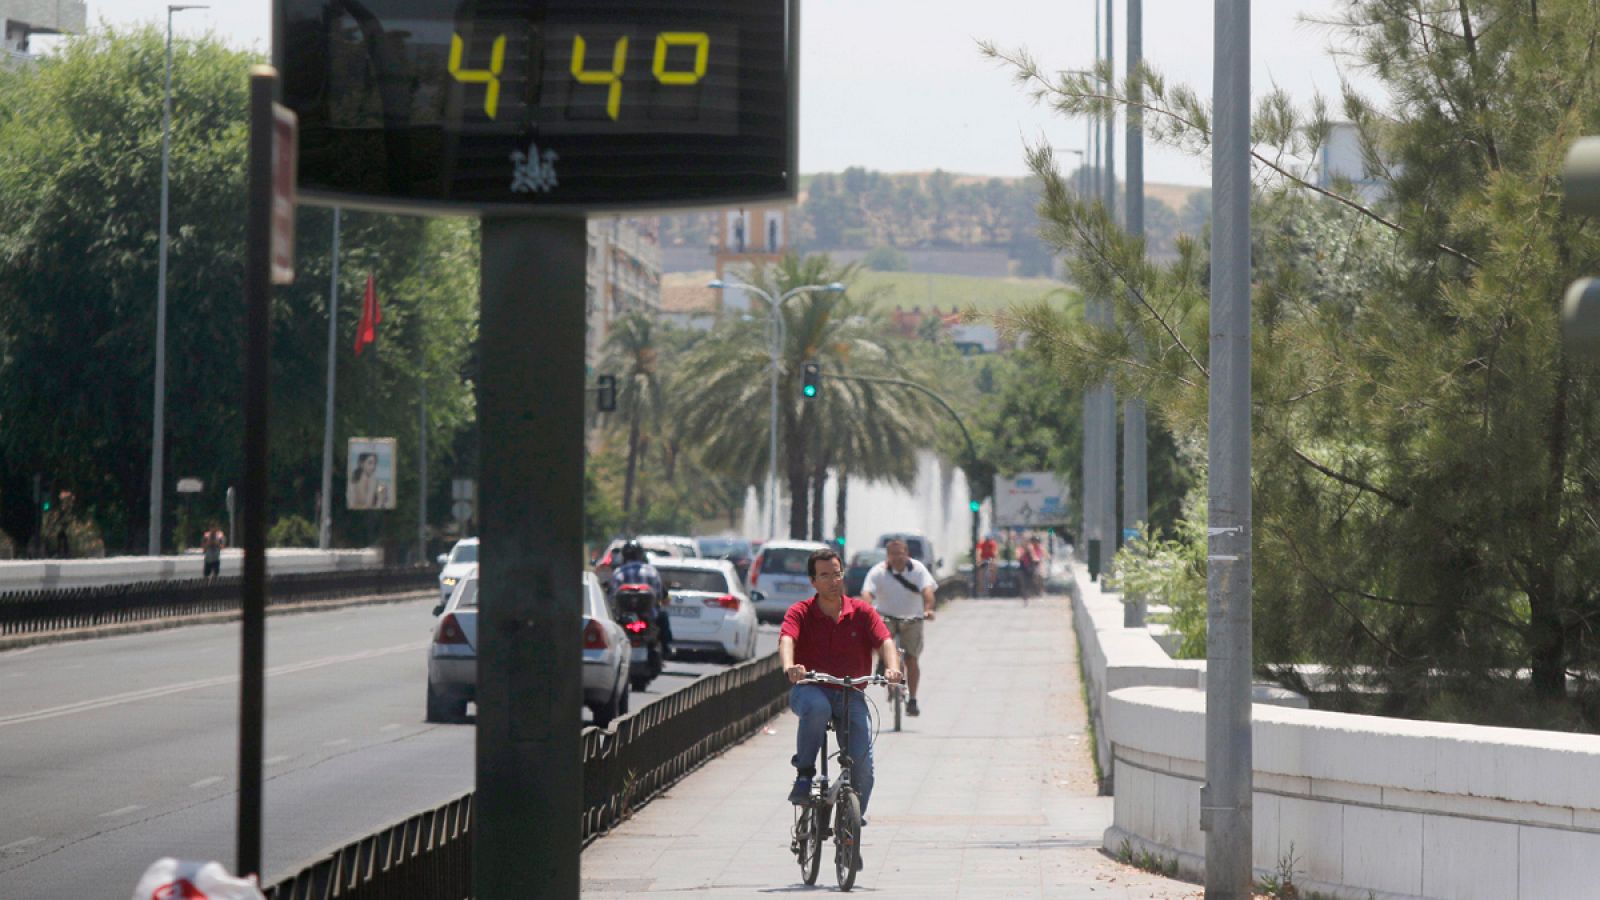 Detalle de un termómetro que marcó 44ºC en Córdoba durante la pasada ola de calor de junio.